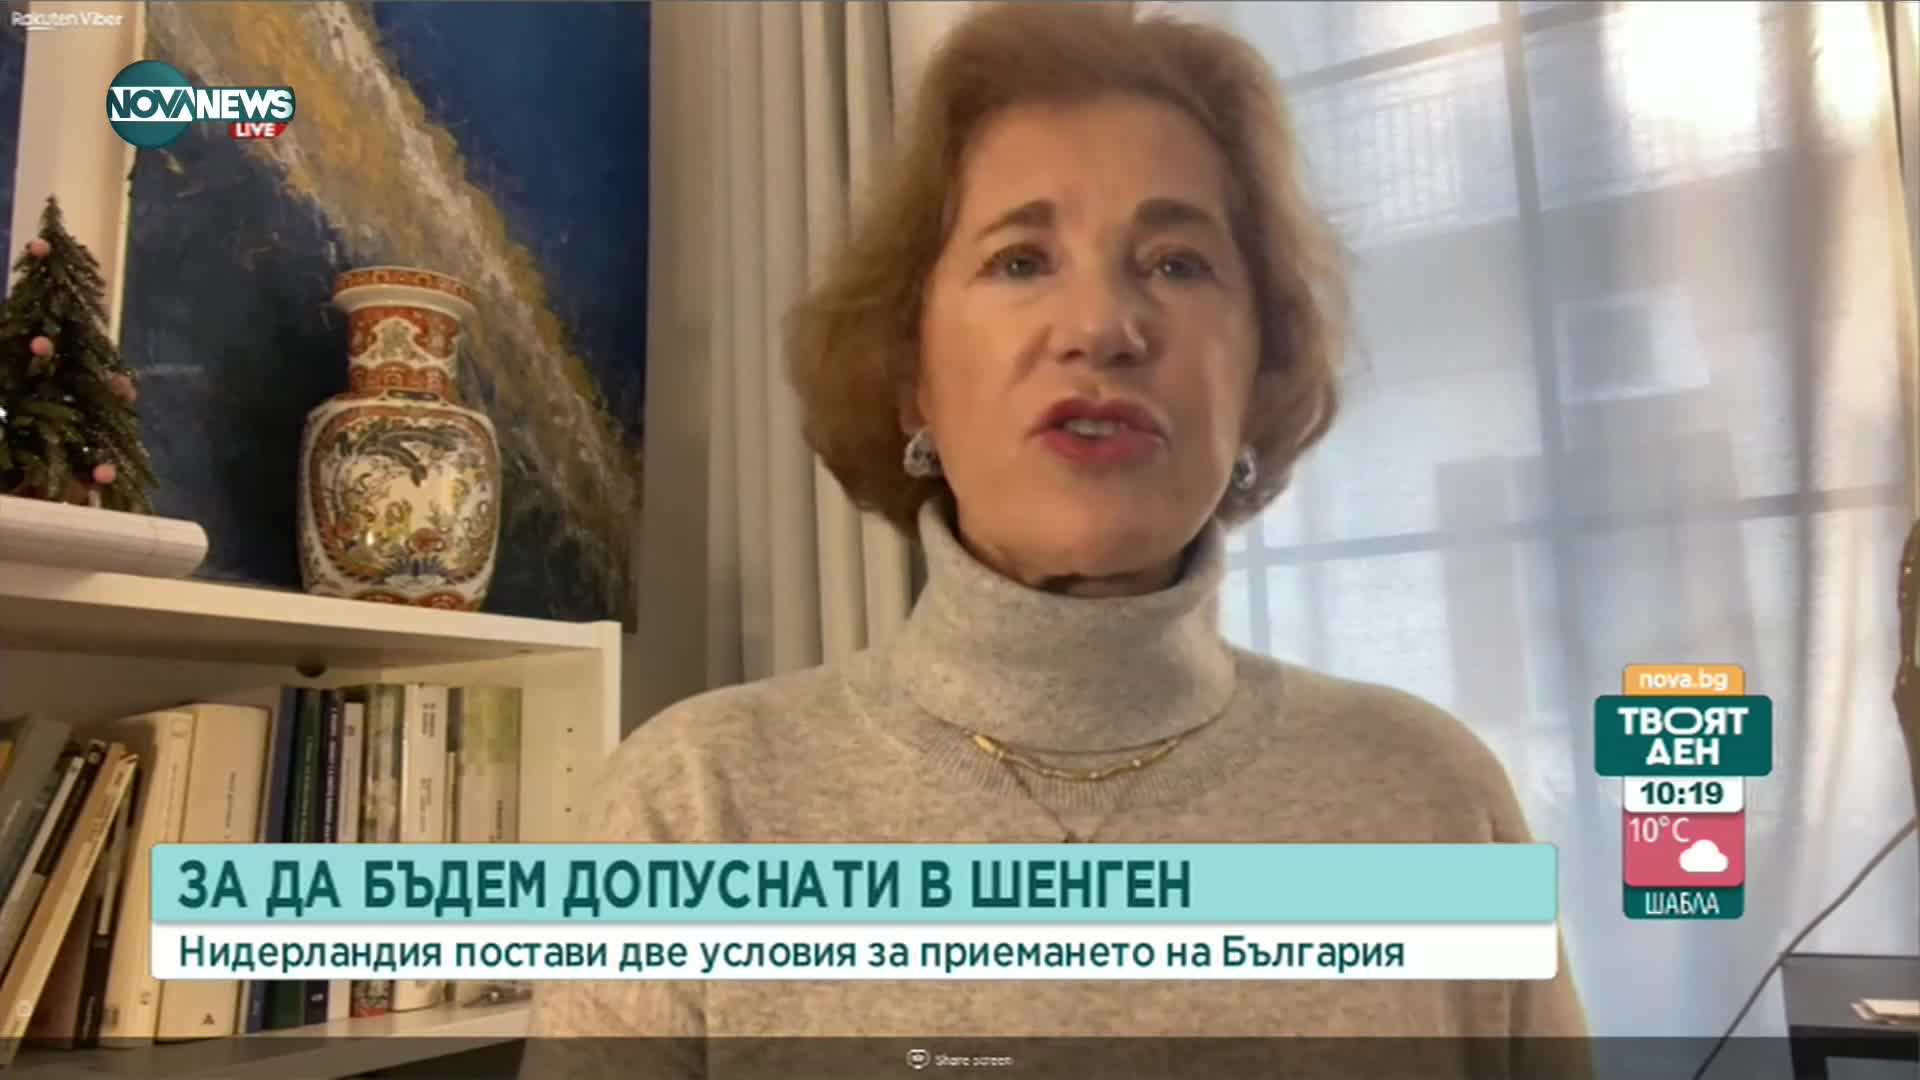 Елена Поптодорова: Трябва да спрем да спорим колко сме изрядни, а да огледаме недостатъците